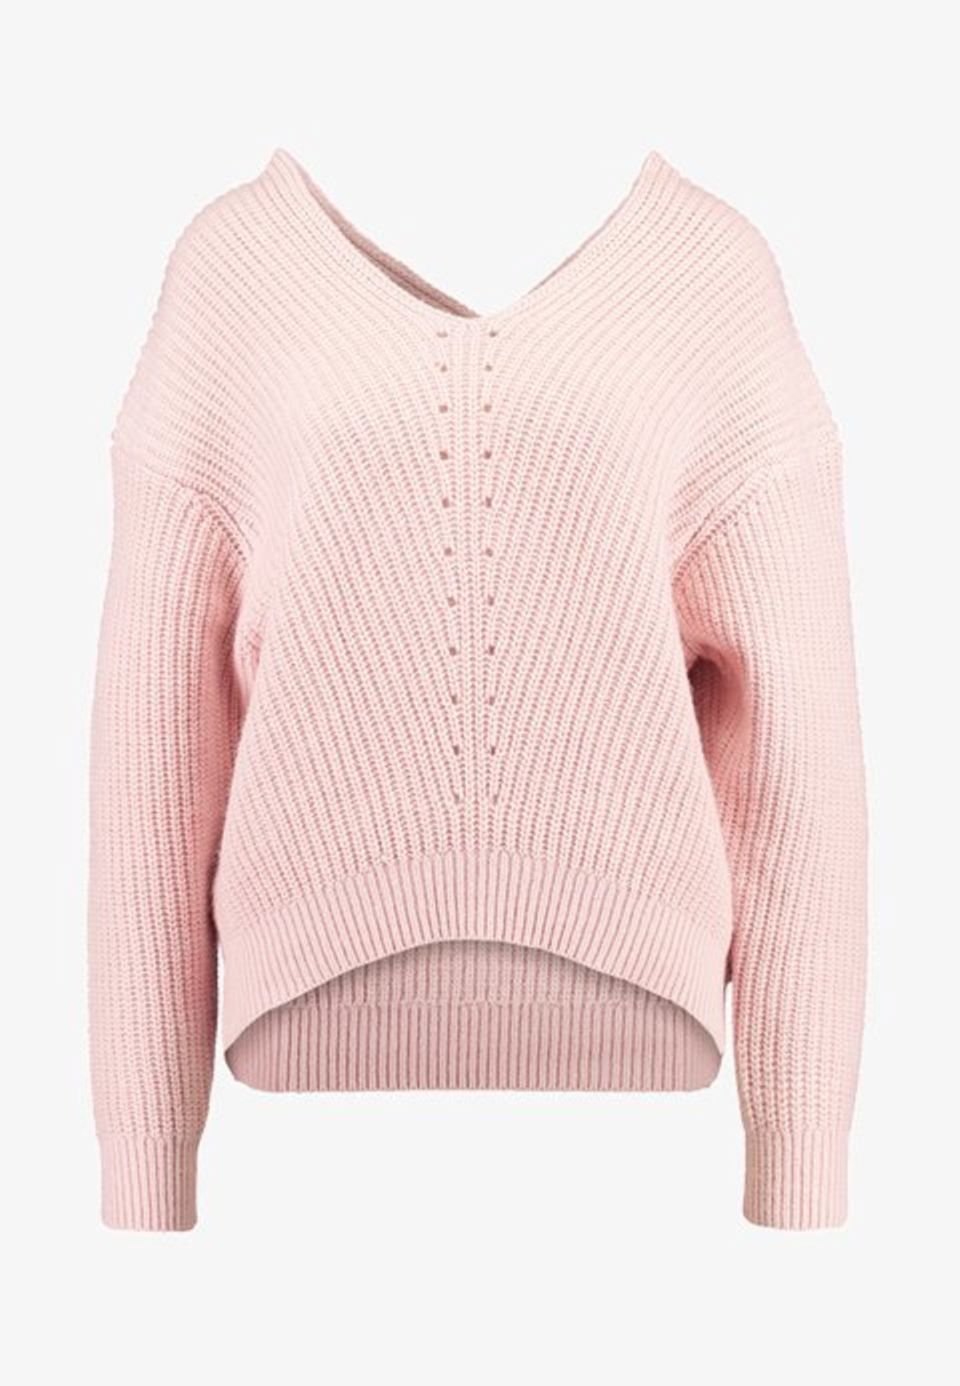 Zur weißen Hose oder zum Jeansrock: dieser rosafarbene Pullover mit V-Ausschnitt von Selected Femme passt zu jedem Look. Für rund 56 Euro bei Zalando erhältlich.